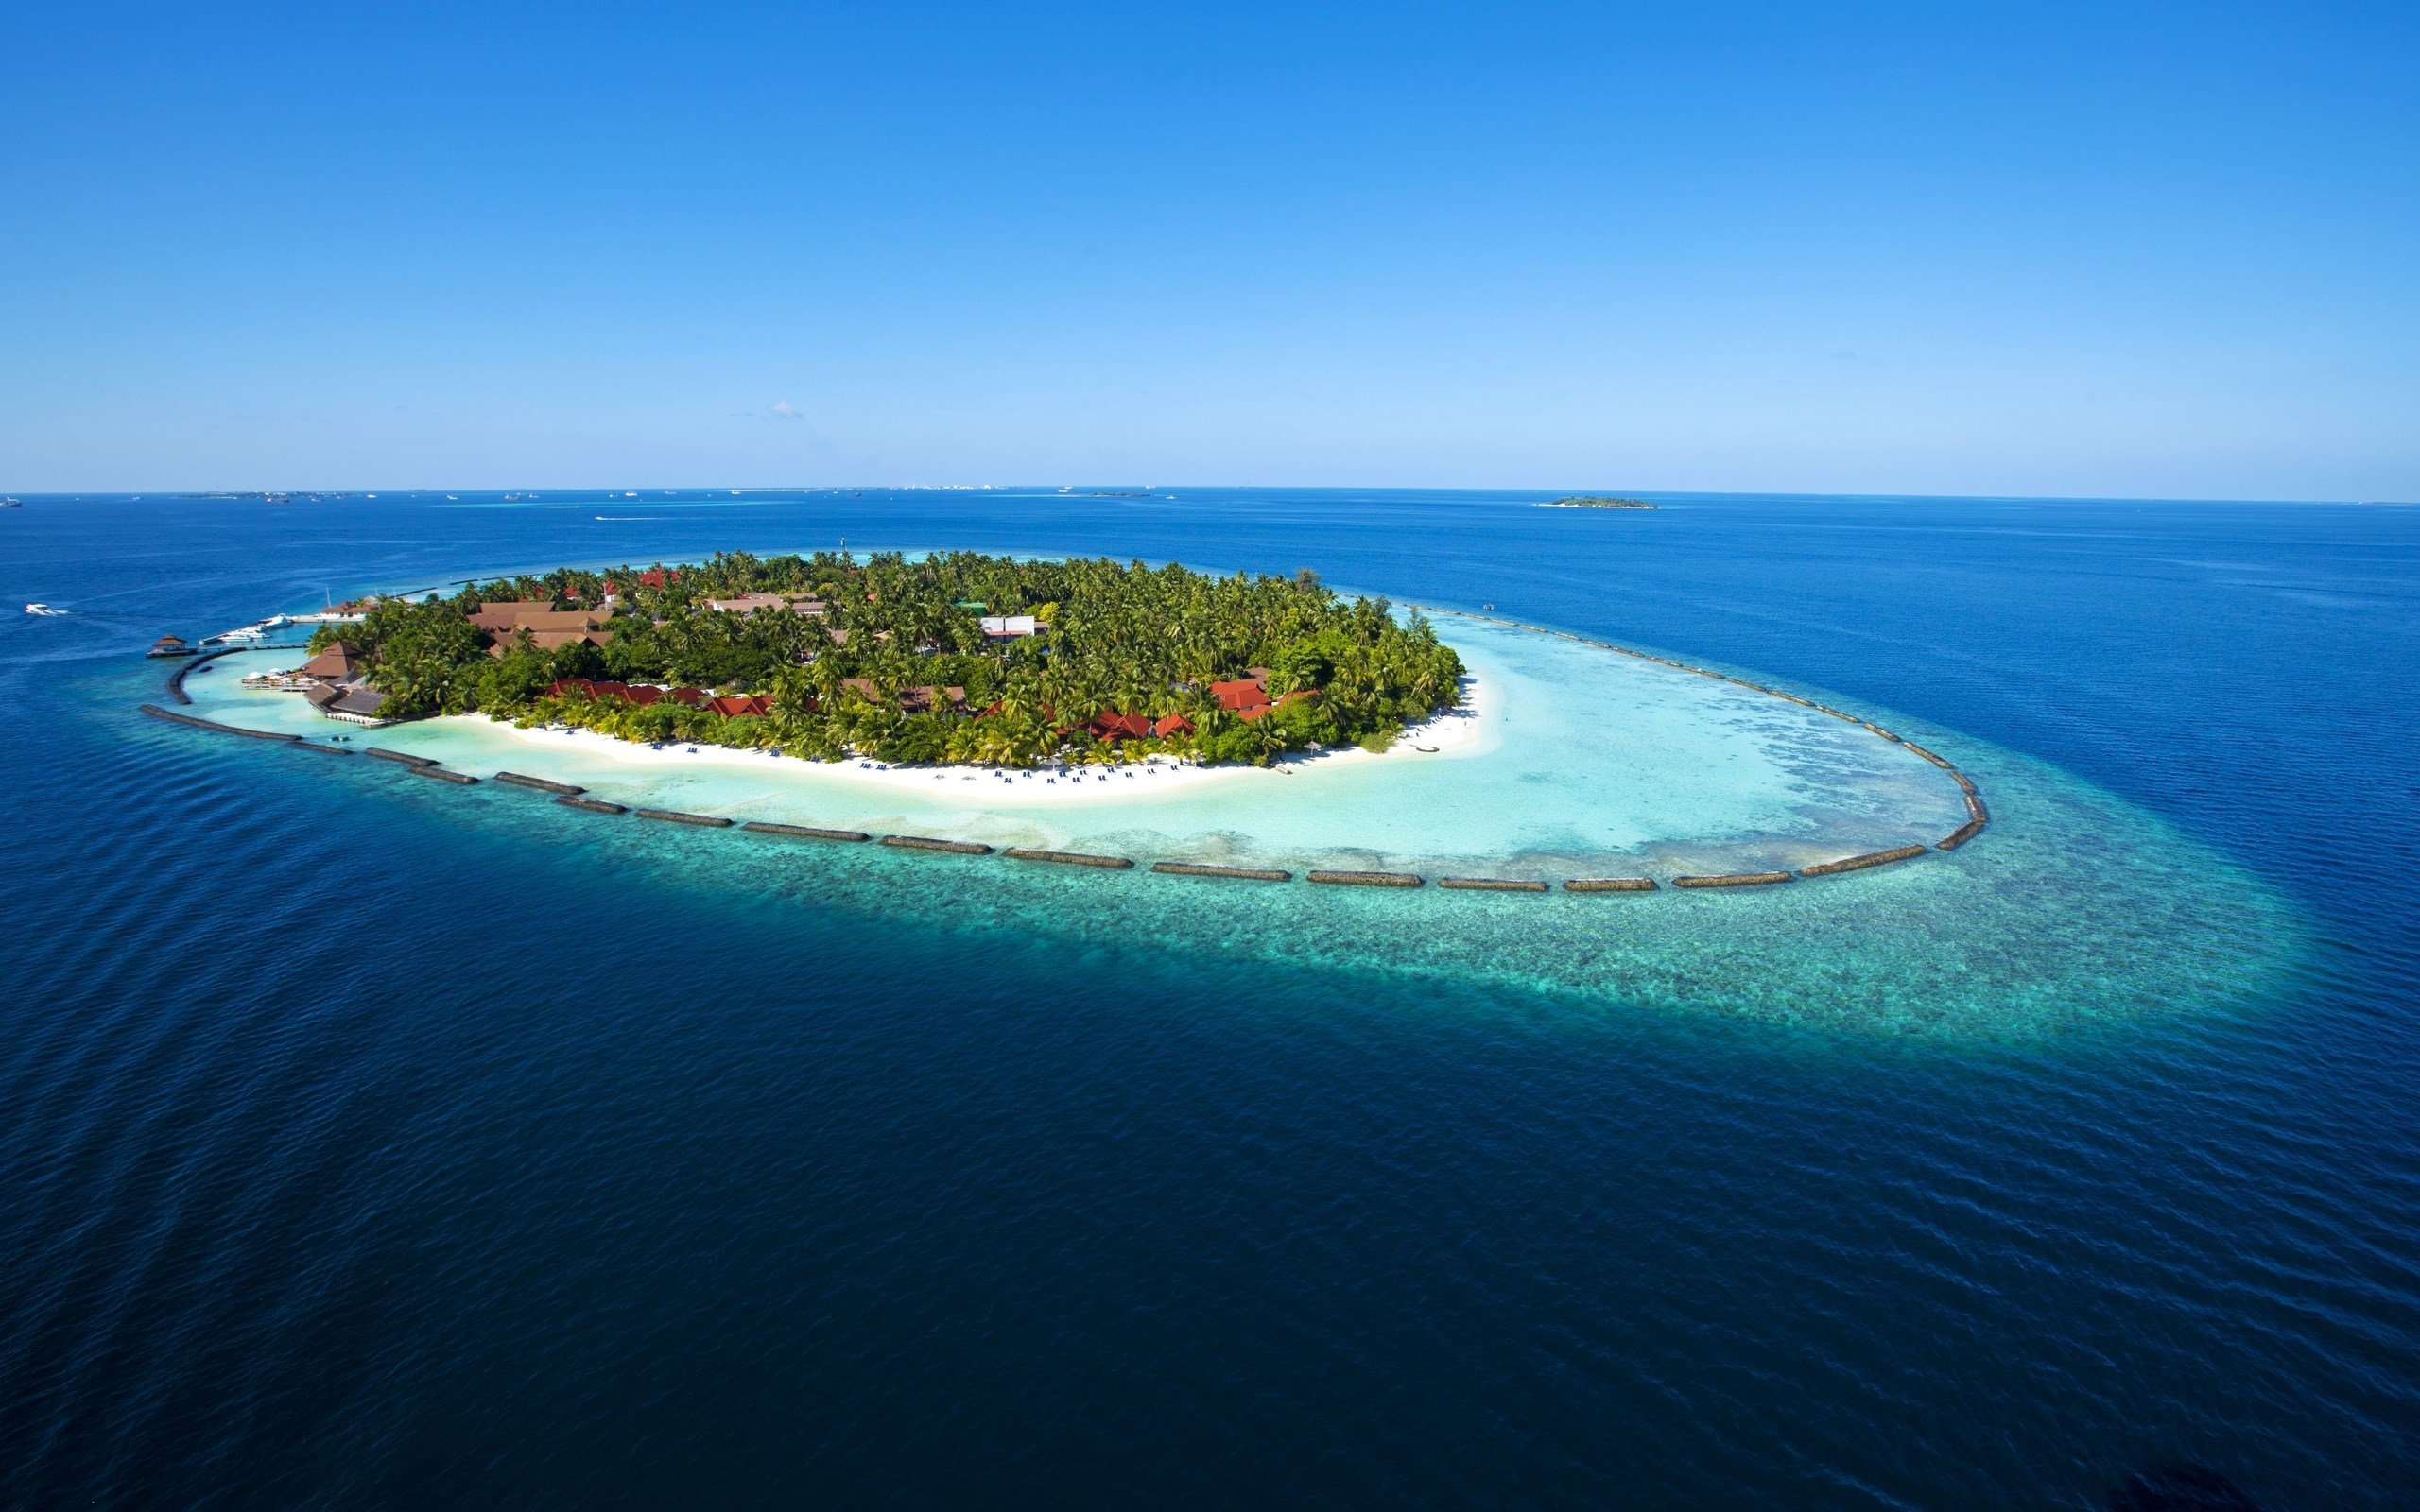 Amazing Maldives Island View - [2560 x 1600]